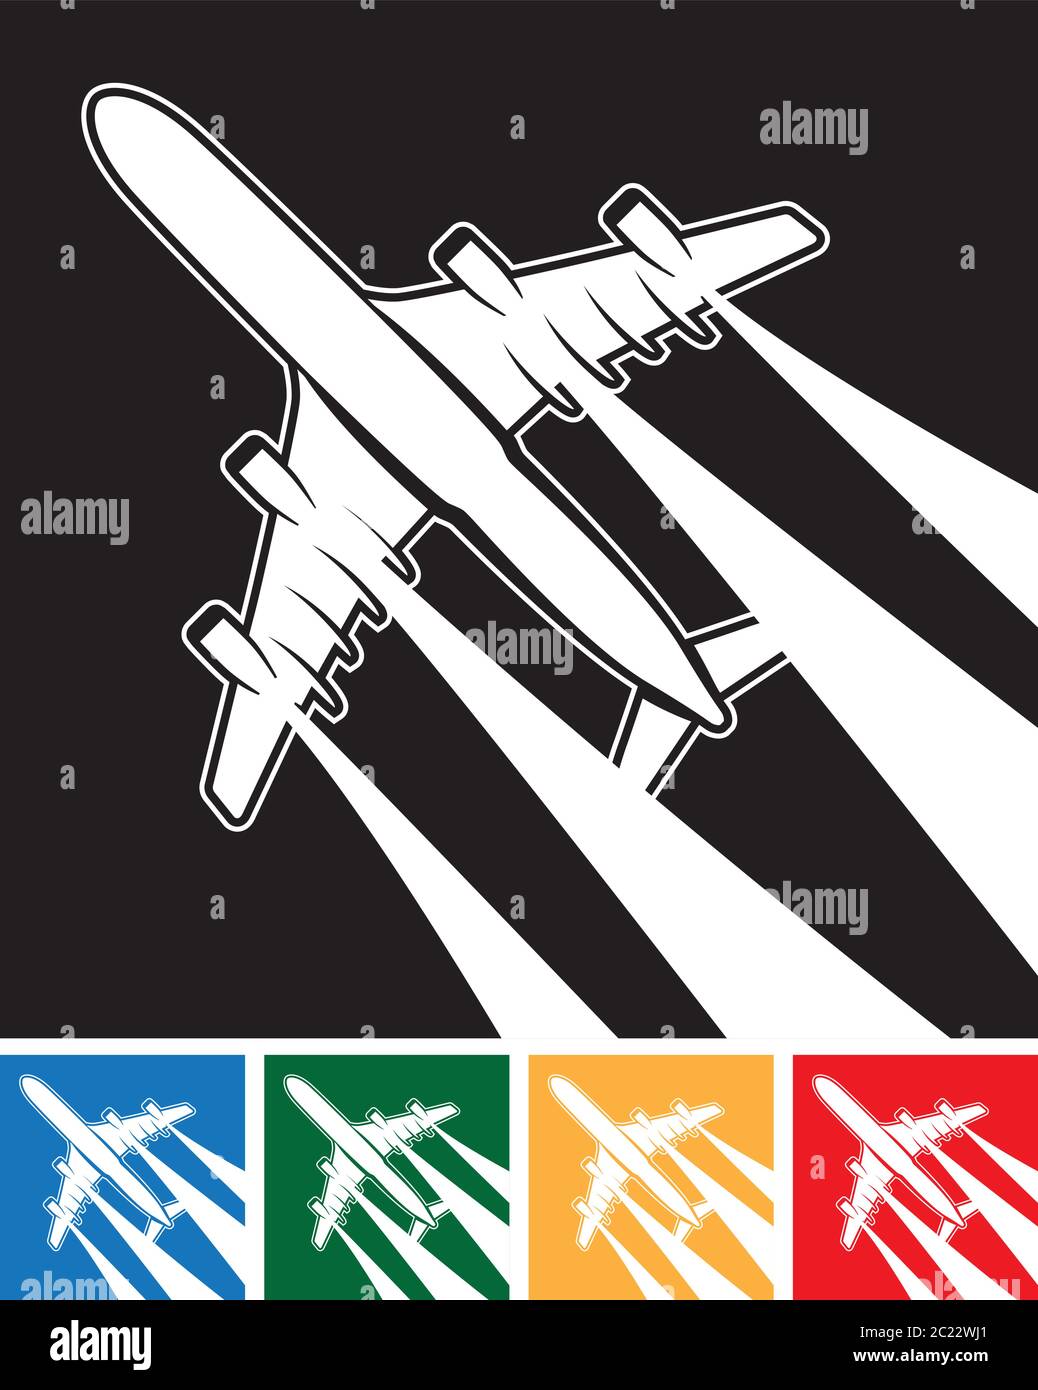 illustrazione vettoriale stilizzata di un piano nel cielo con tracce di inversione da motori a getto Illustrazione Vettoriale